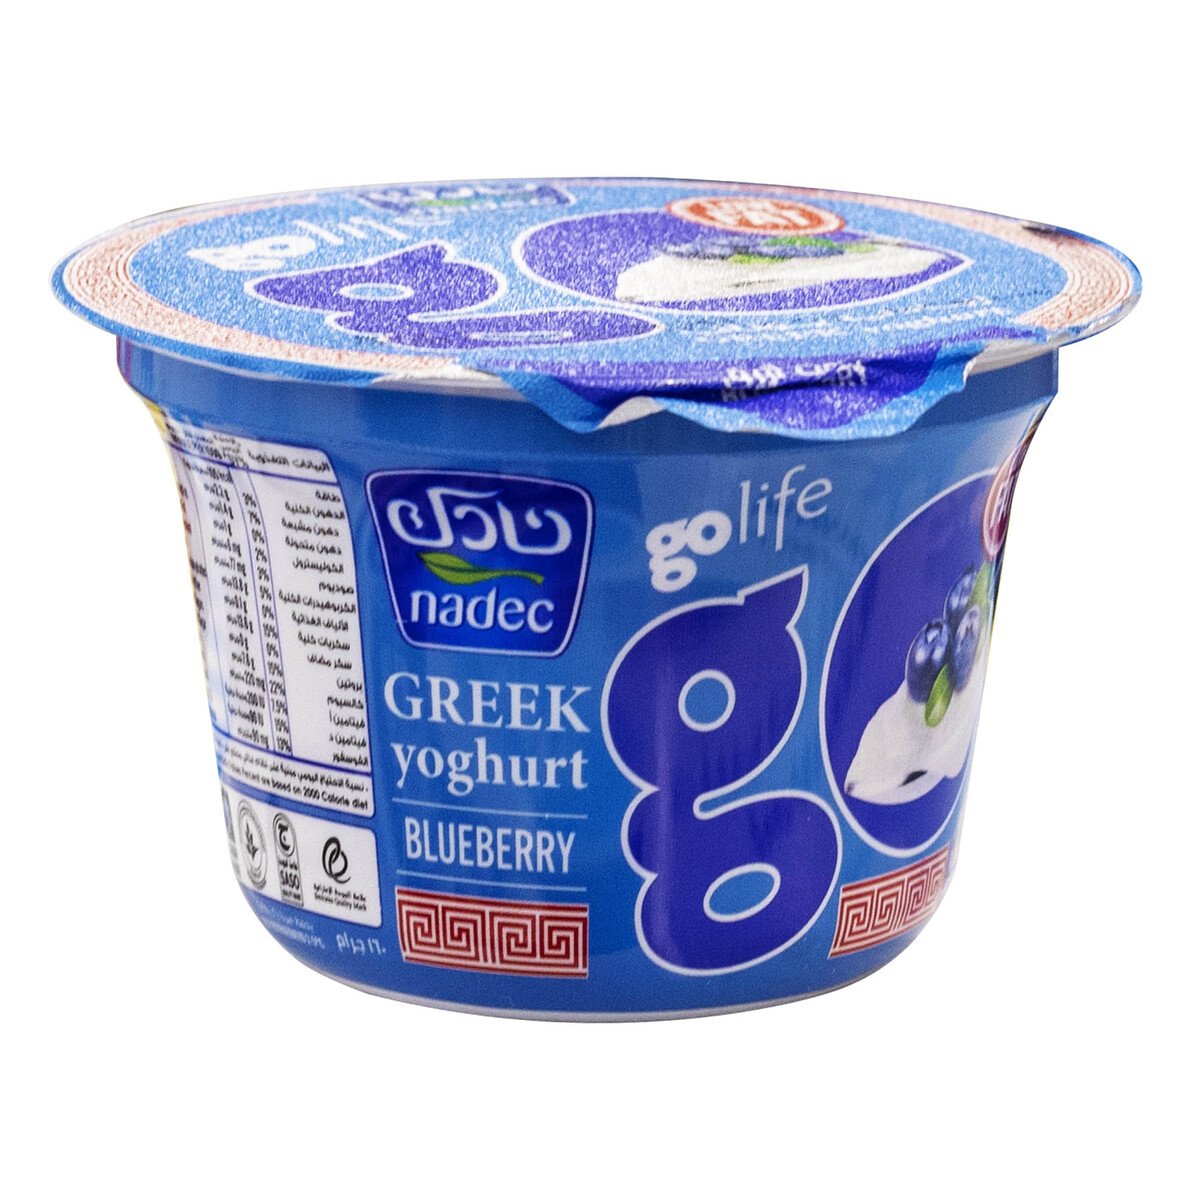 اشتري قم بشراء نادك جو لايف زبادي يوناني قليل الدسم بالتوت البري 160 جم Online at Best Price من الموقع - من لولو هايبر ماركت Flavoured Yoghurt في السعودية